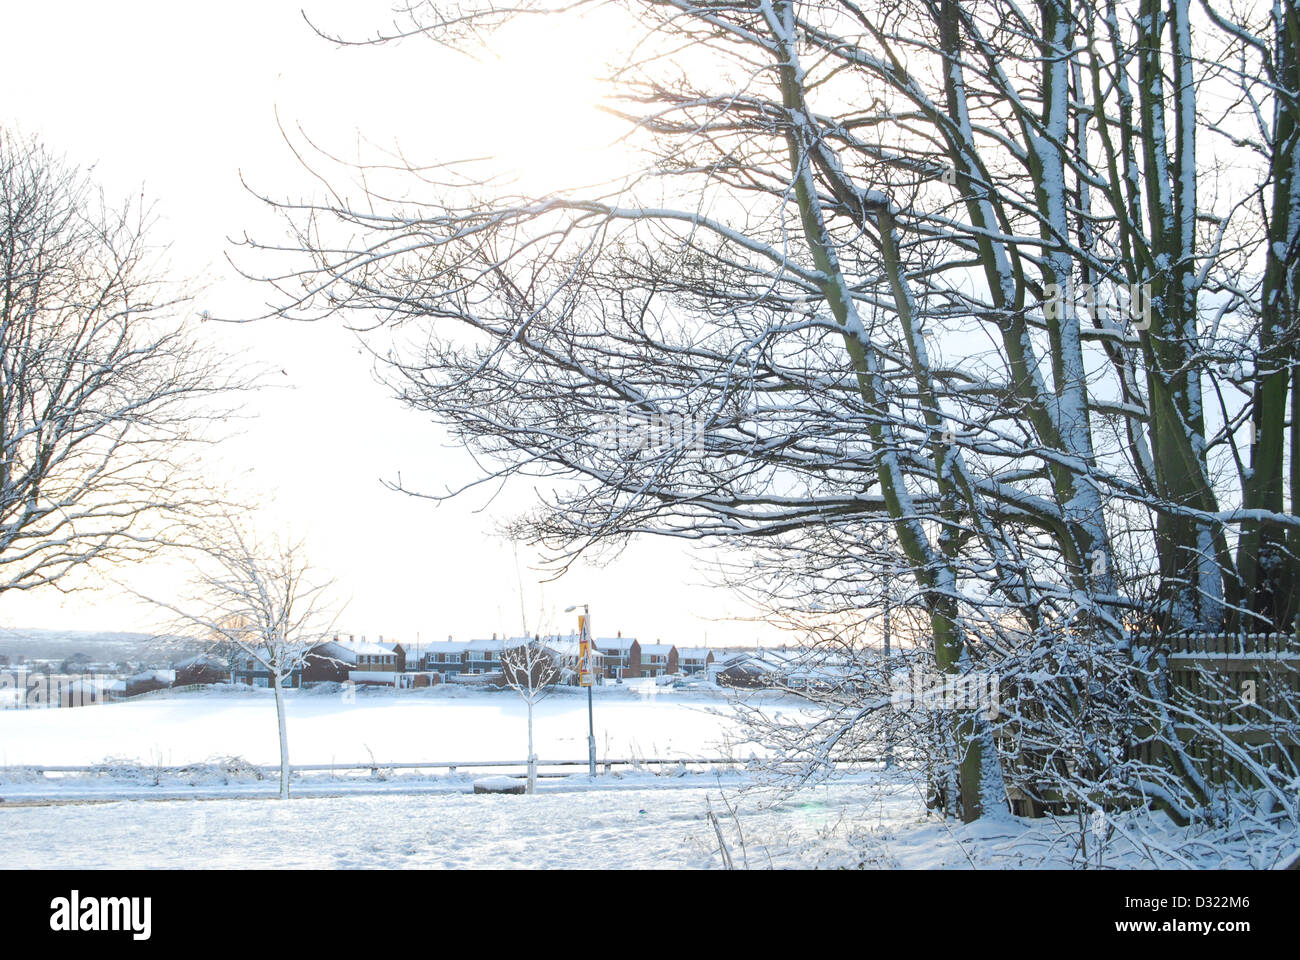 Ein schneebedeckten Baum im Winter Landschaft und Himmel Hintergrund mit jeder Zweig mit Frost sehr malerisch dicht bedeckt Stockfoto